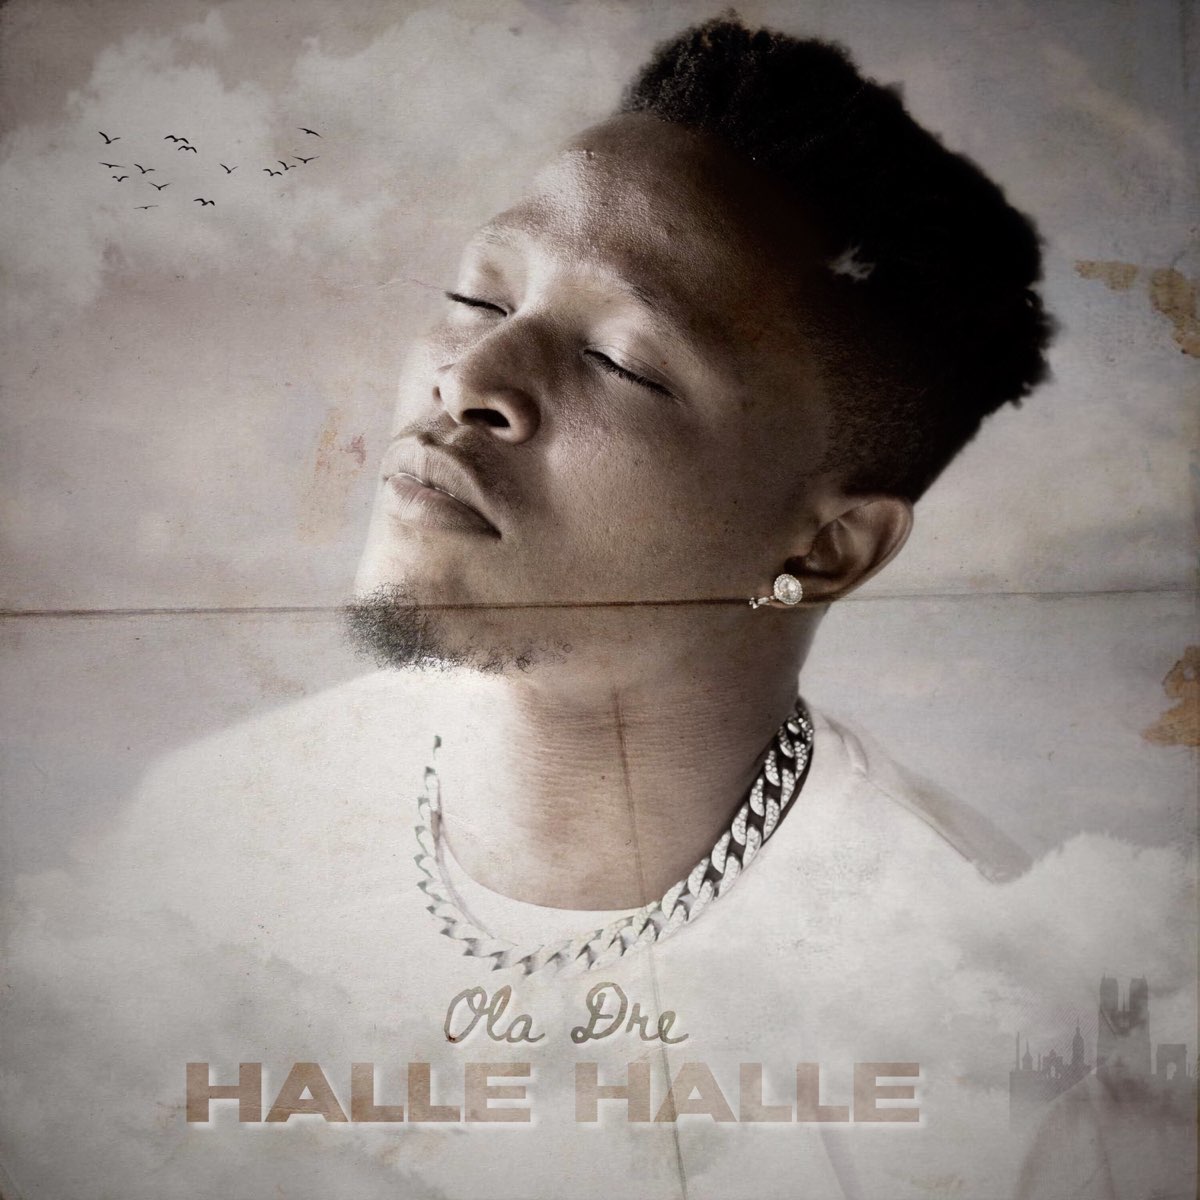 Halle Halle - Single by Ola Dre on Apple Music